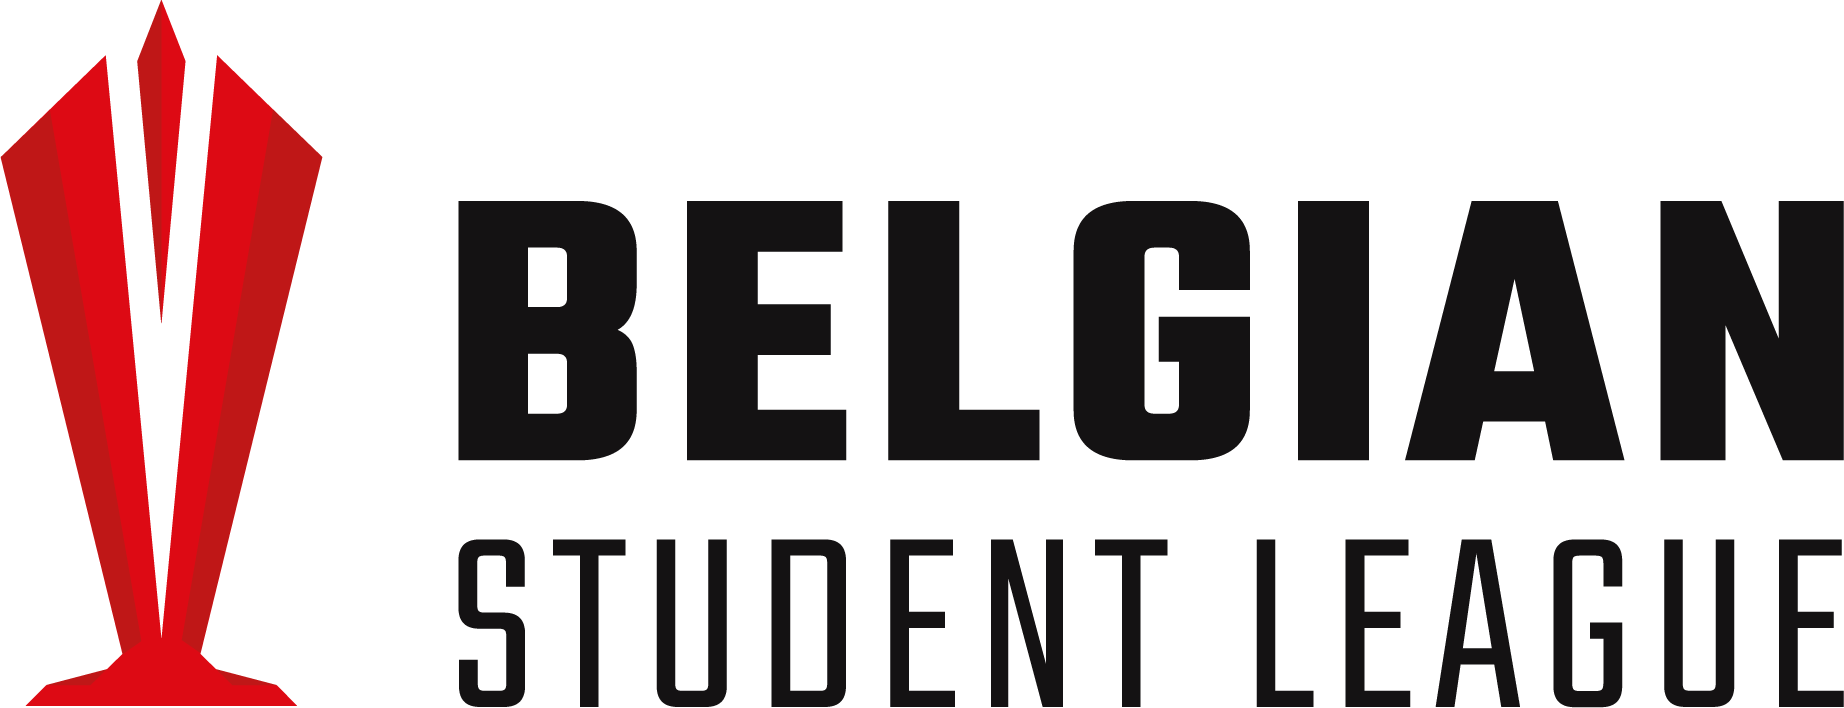 IEEE Student Branch - UEM Kolkata | LinkedIn